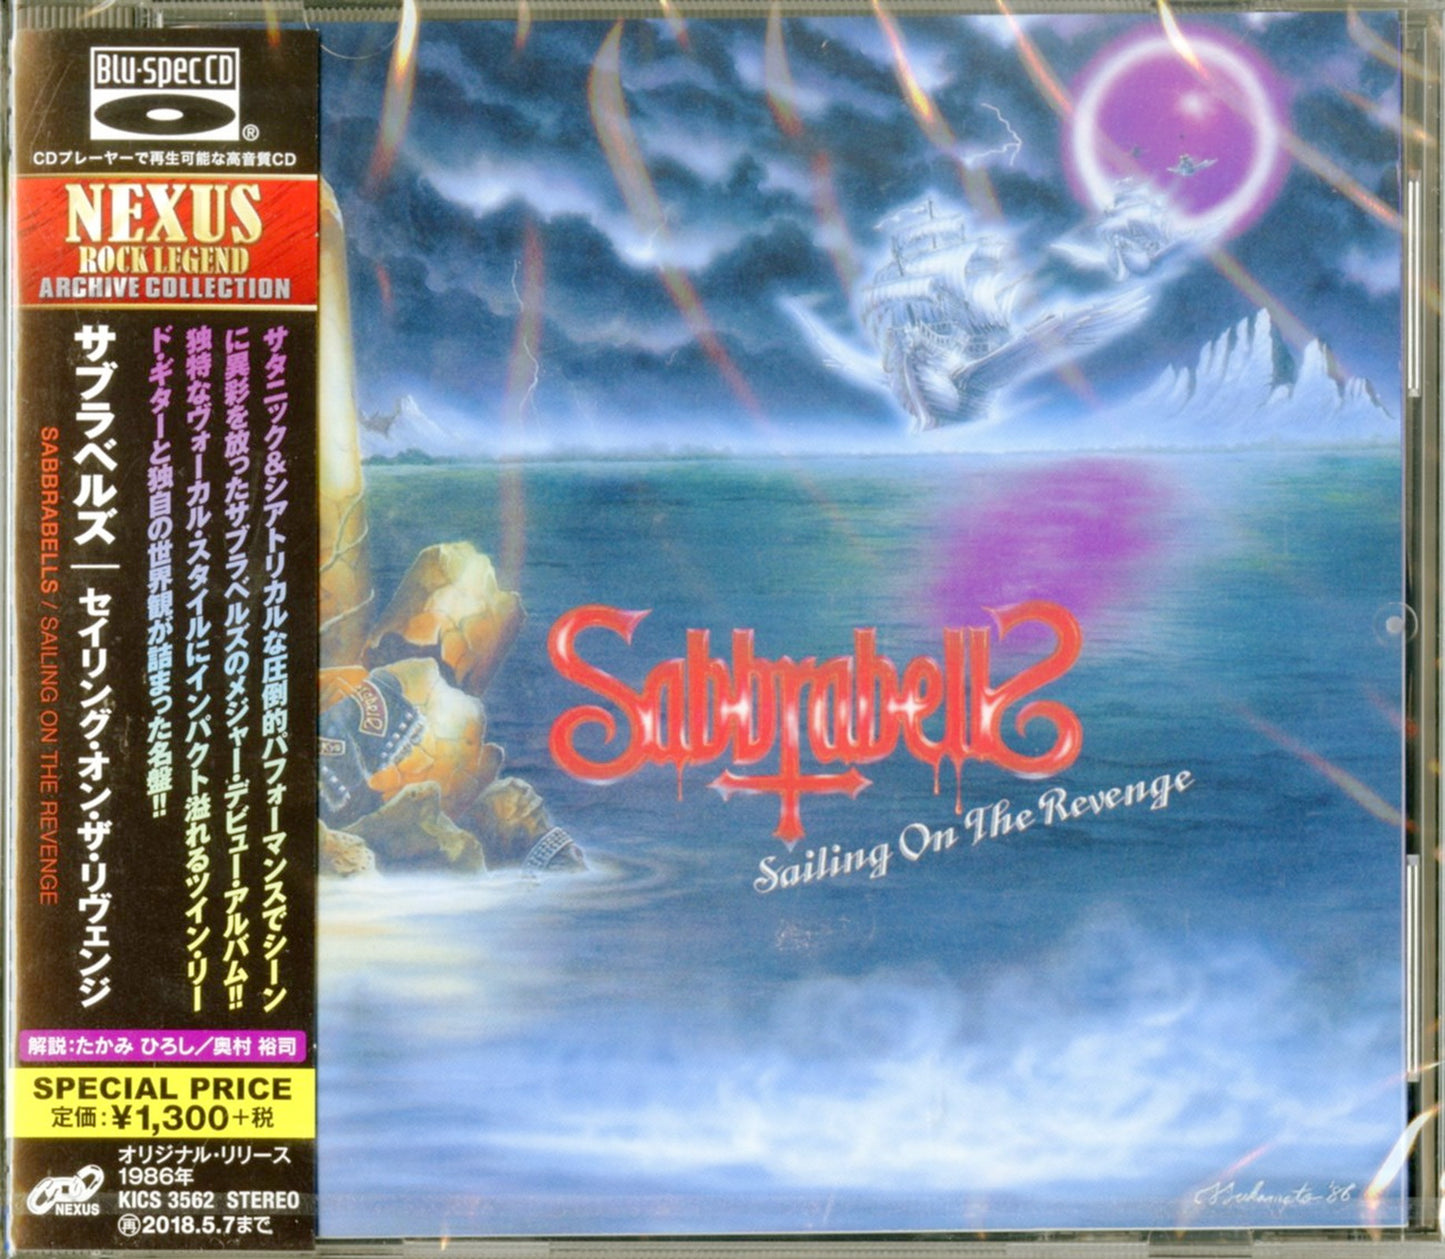 Sabbrabells - Sailing On The Revenge - Japan  Blu-spec CD